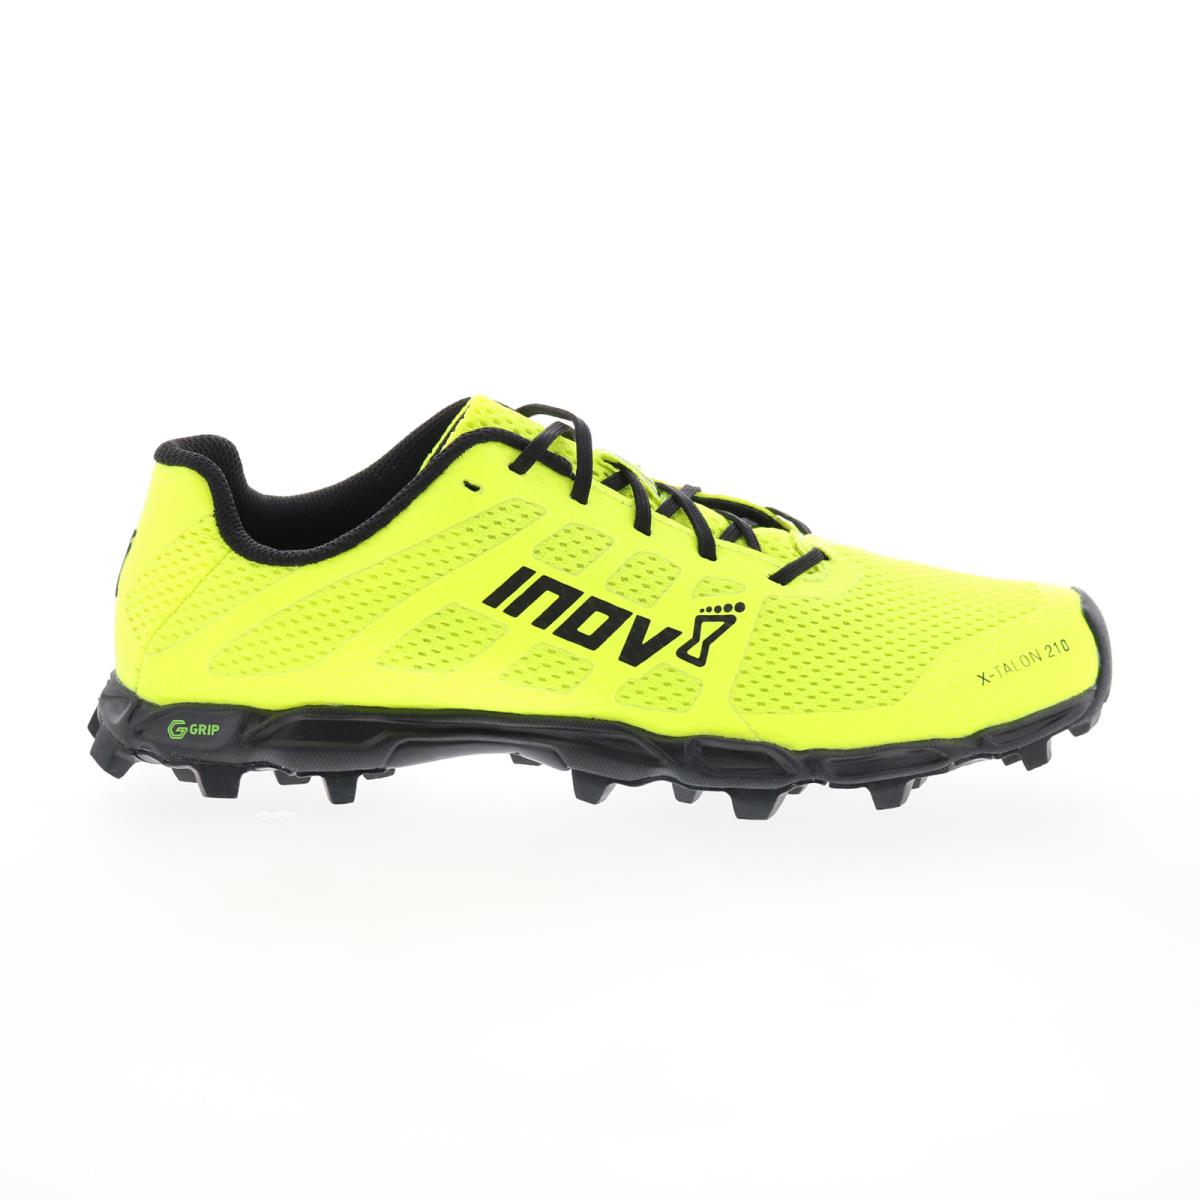 Inov-8 X-talon G 210 V2 000985-YWBK Mens Yellow Athletic Hiking Shoes 10